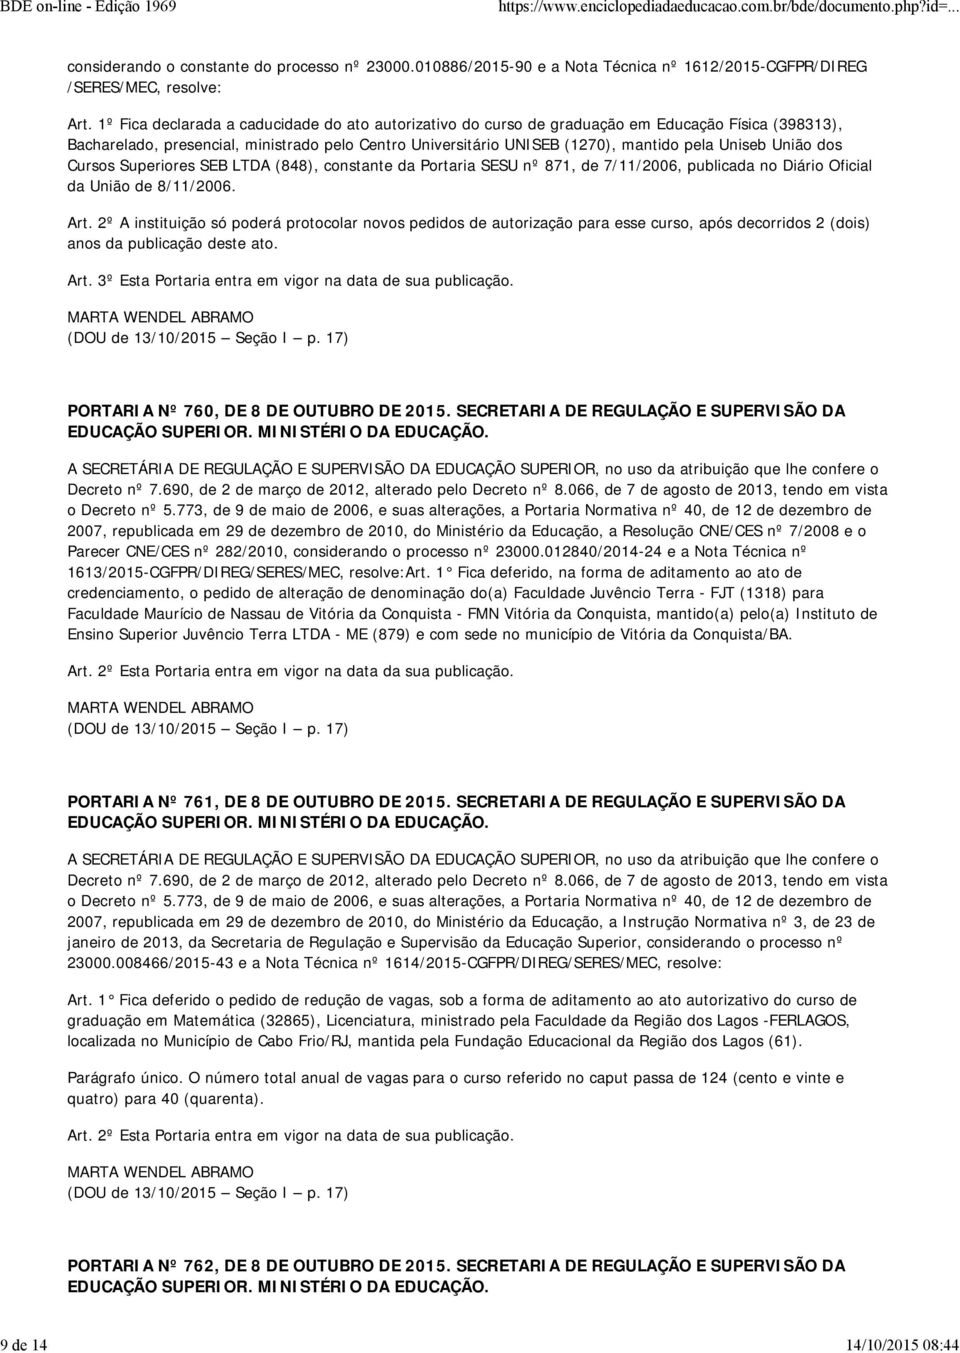 União dos Cursos Superiores SEB LTDA (848), constante da Portaria SESU nº 871, de 7/11/2006, publicada no Diário Oficial da União de 8/11/2006. Art.